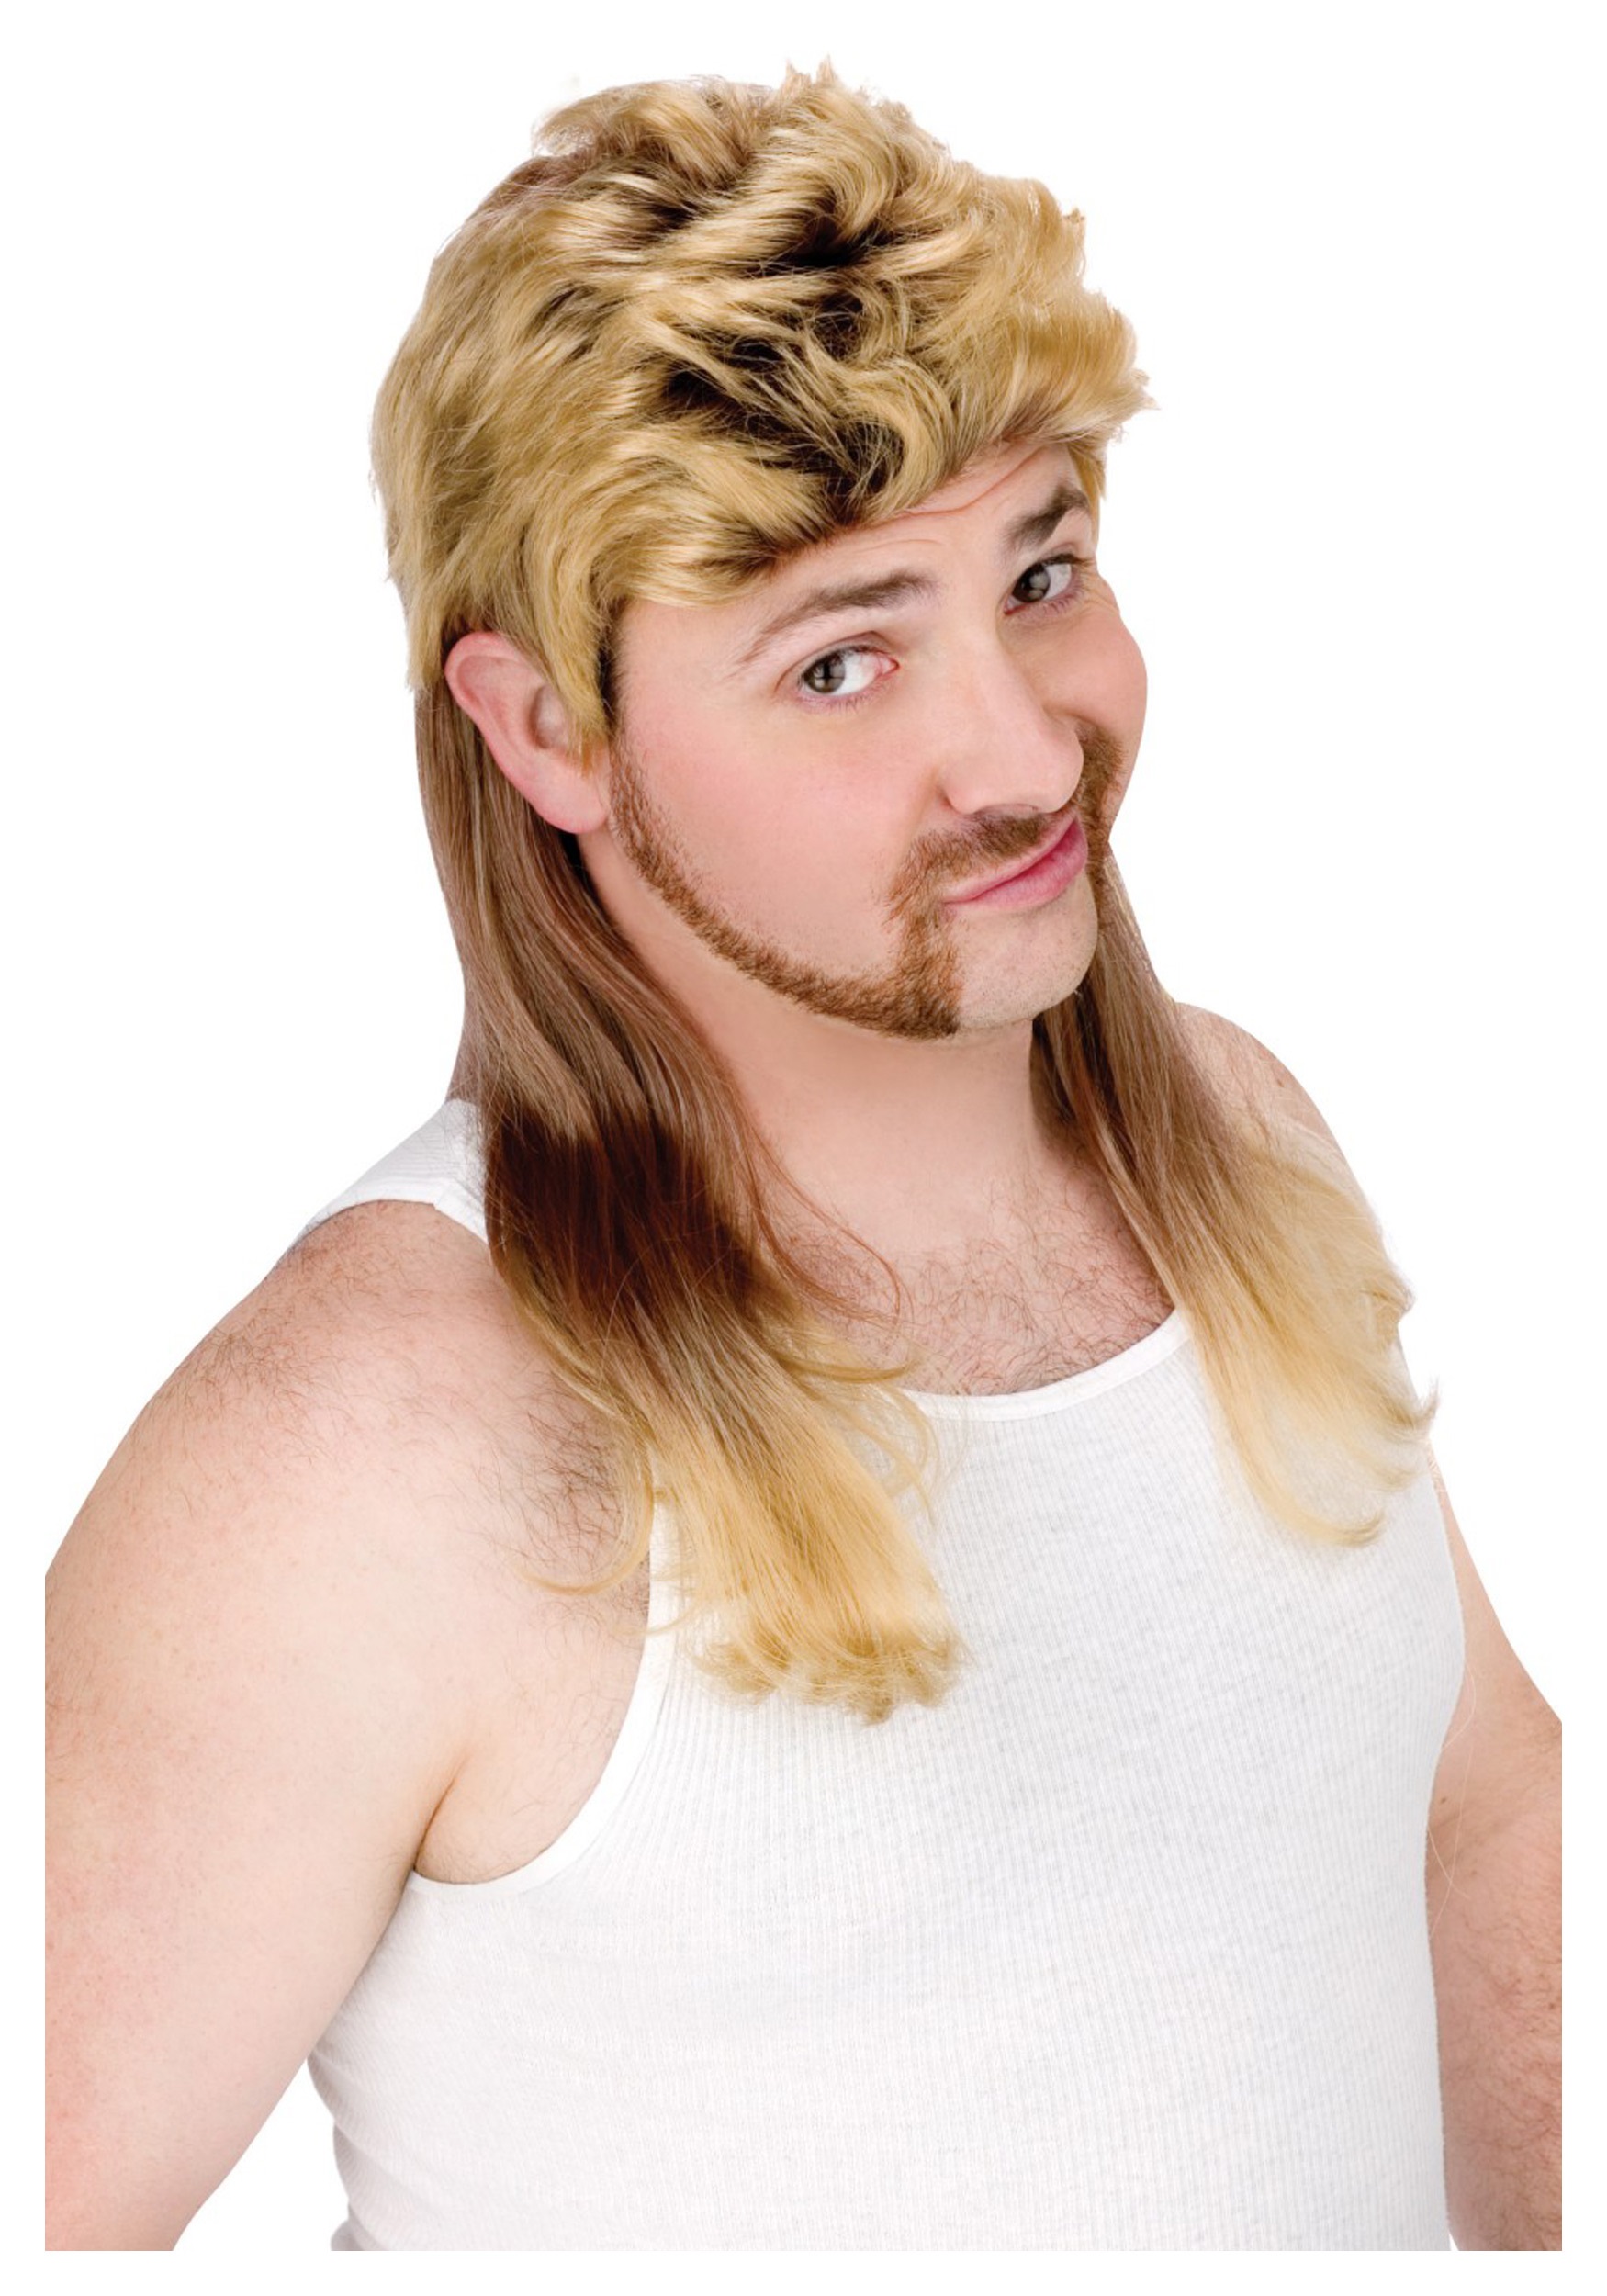 Mullet Wig in Blonde Kids Costume Wigs Blonde Wig + Black Glasses Mens 80s ...